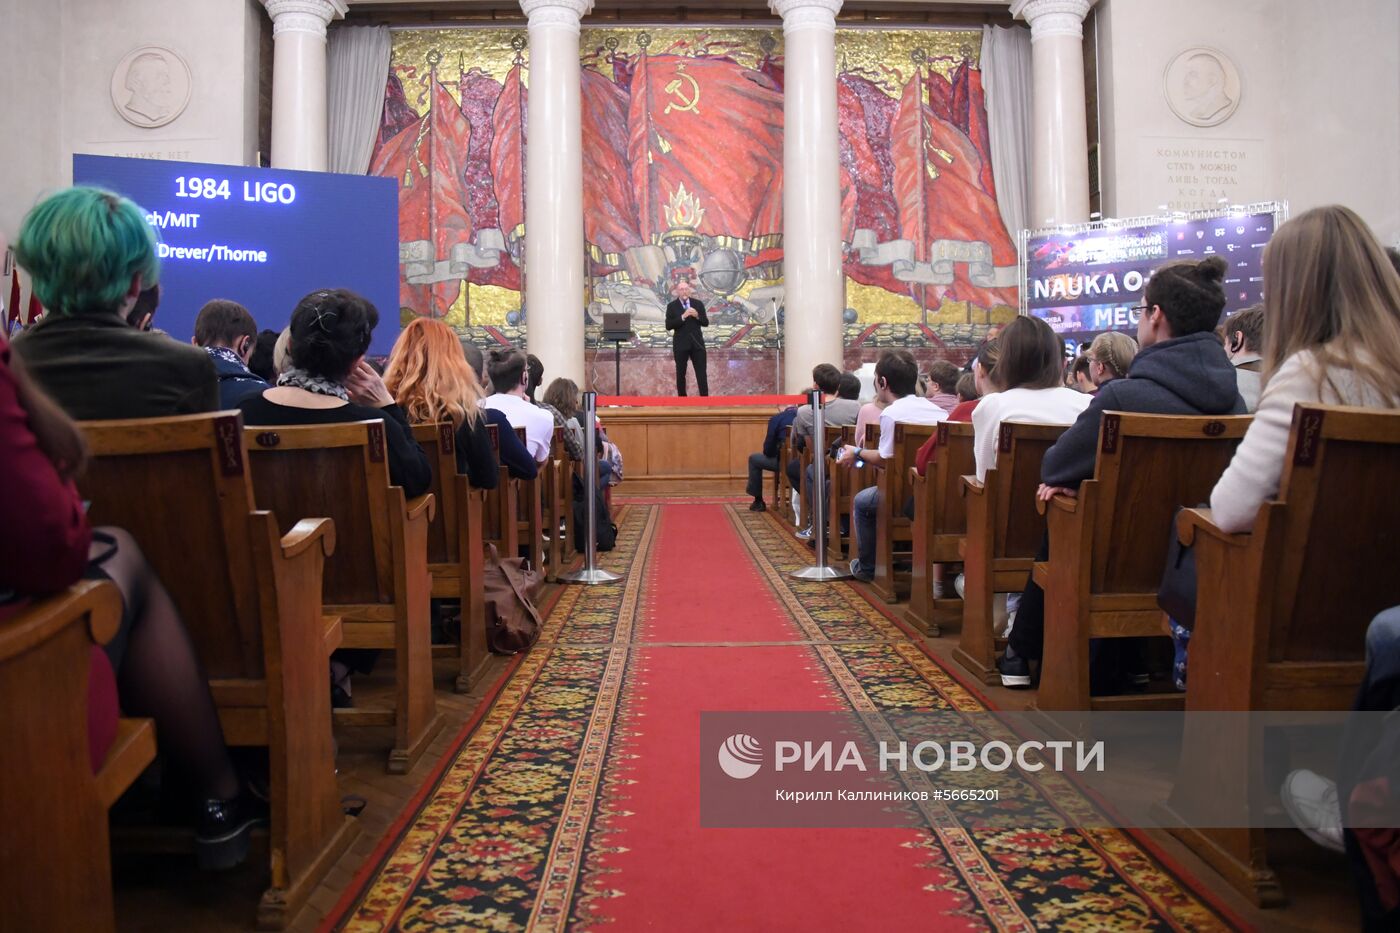 Всероссийский фестиваль науки Nauka 0+